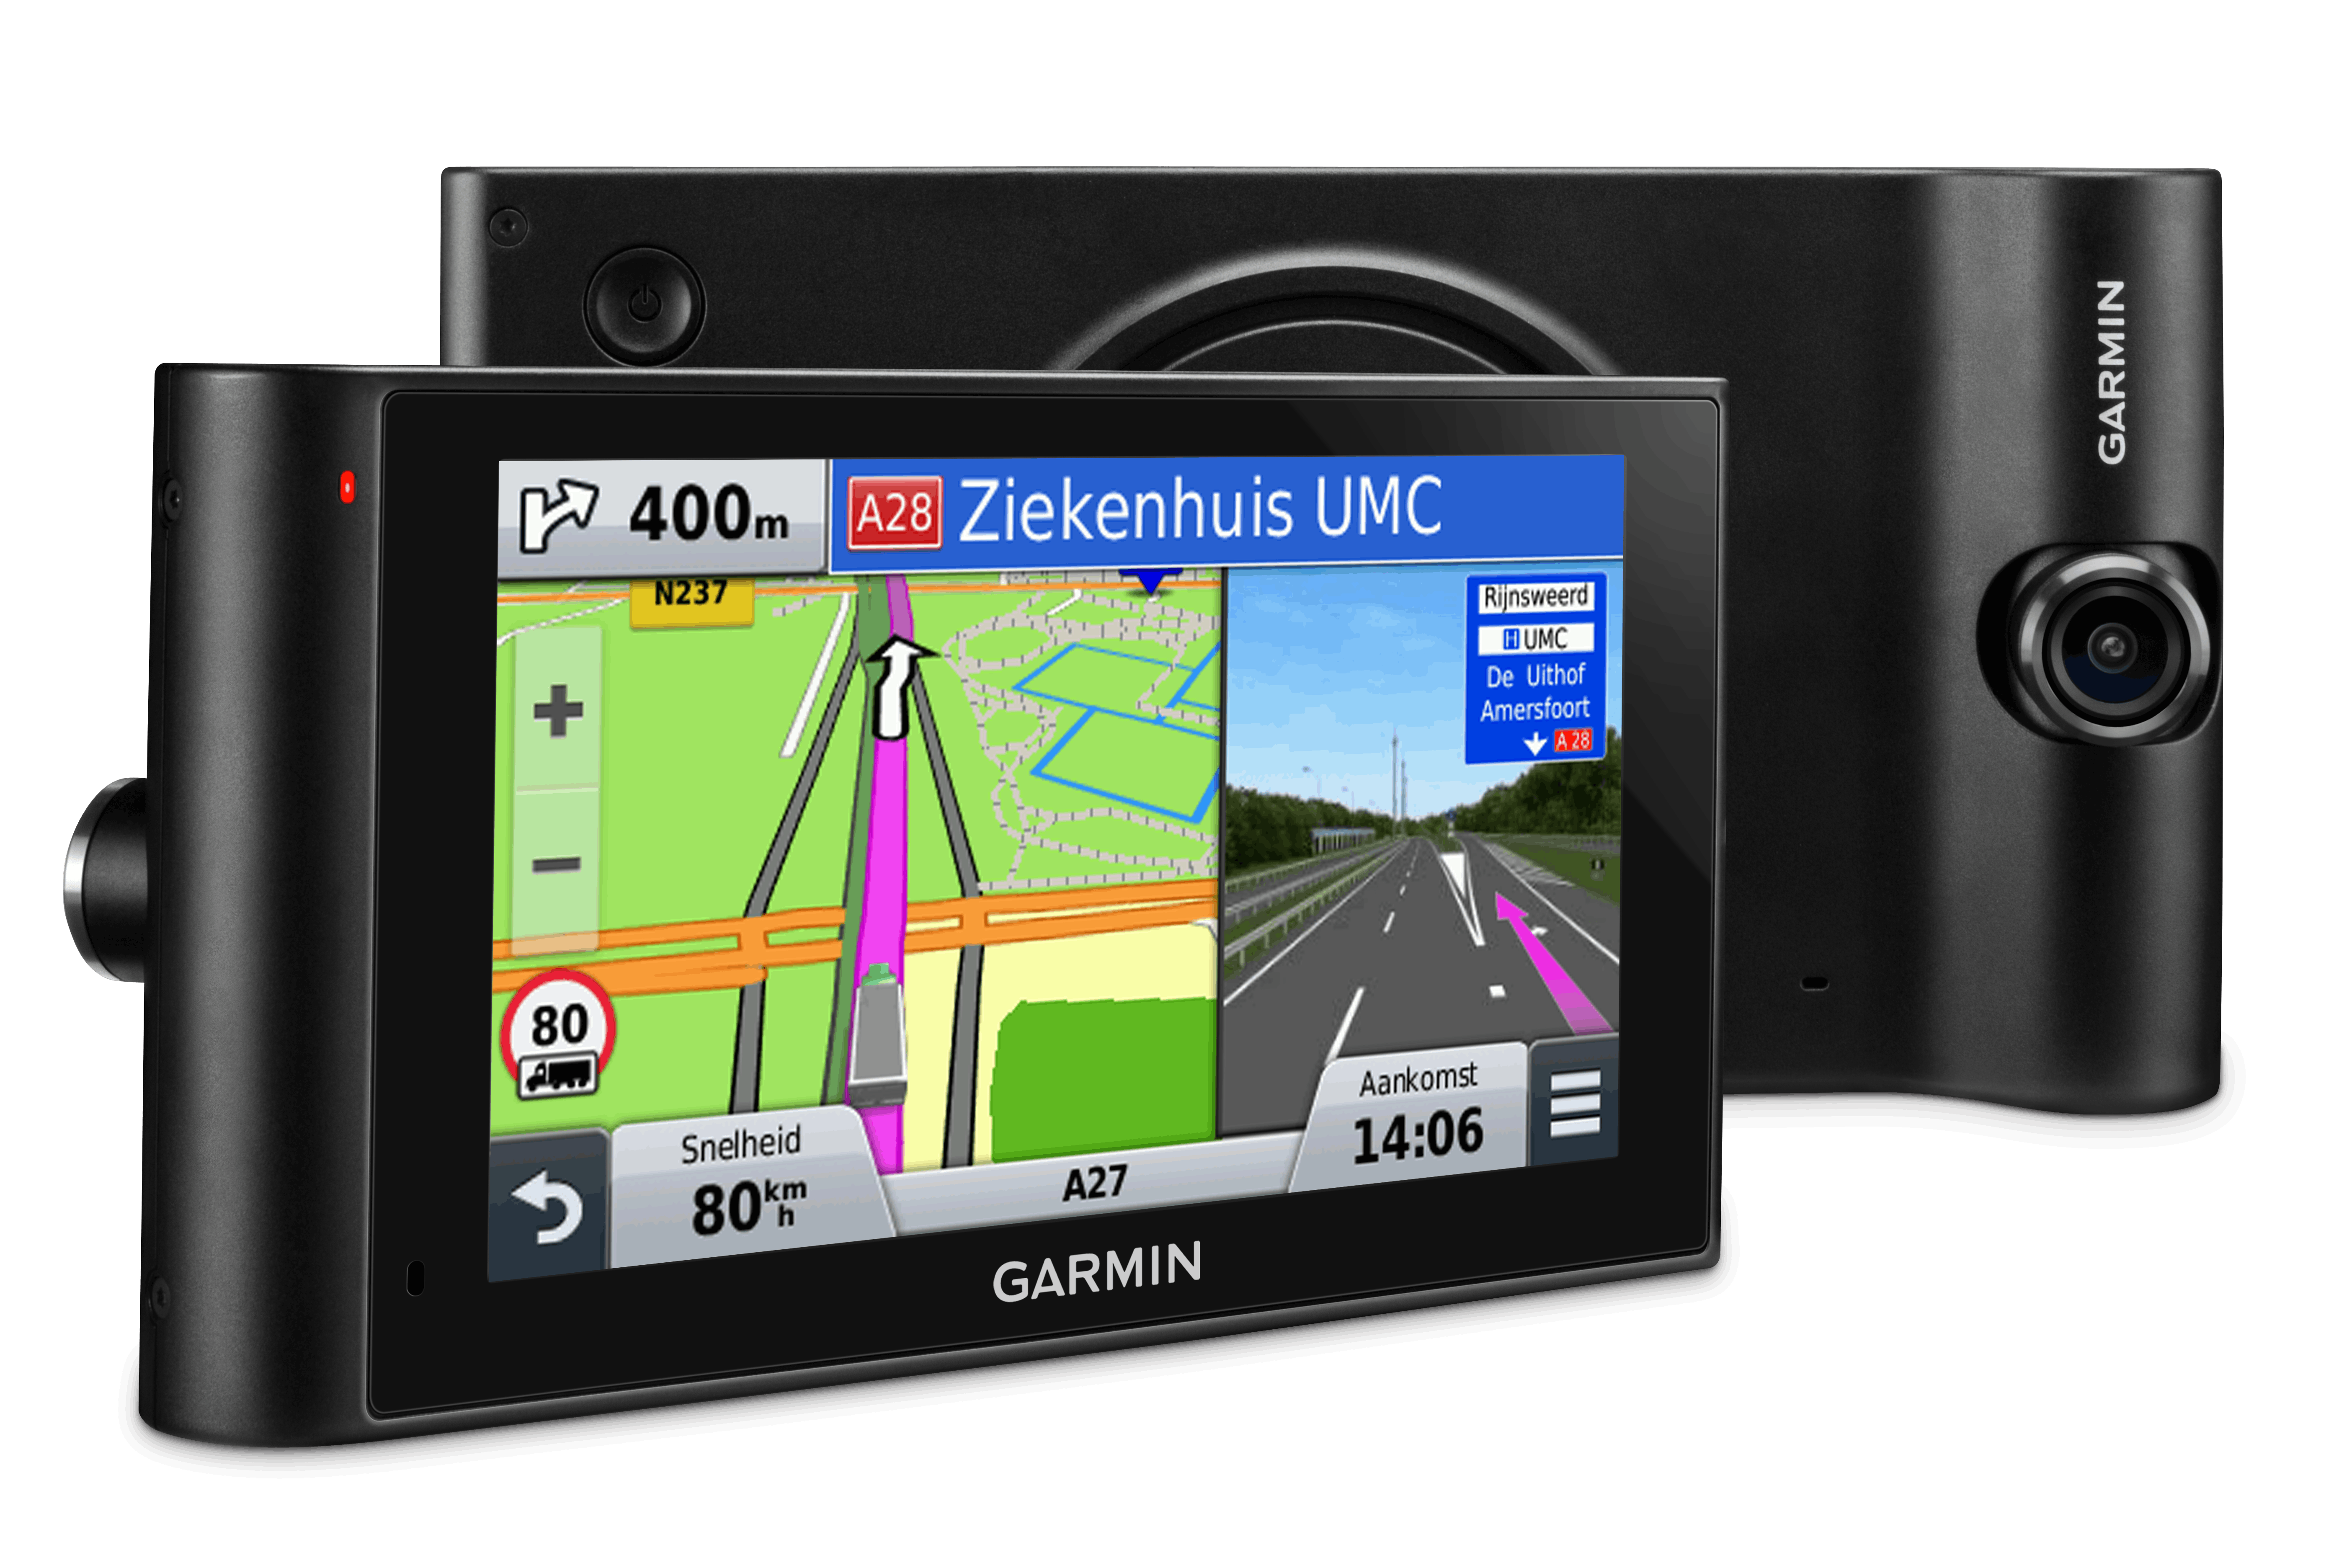 Garmin lanceert trucknavigatie met camera